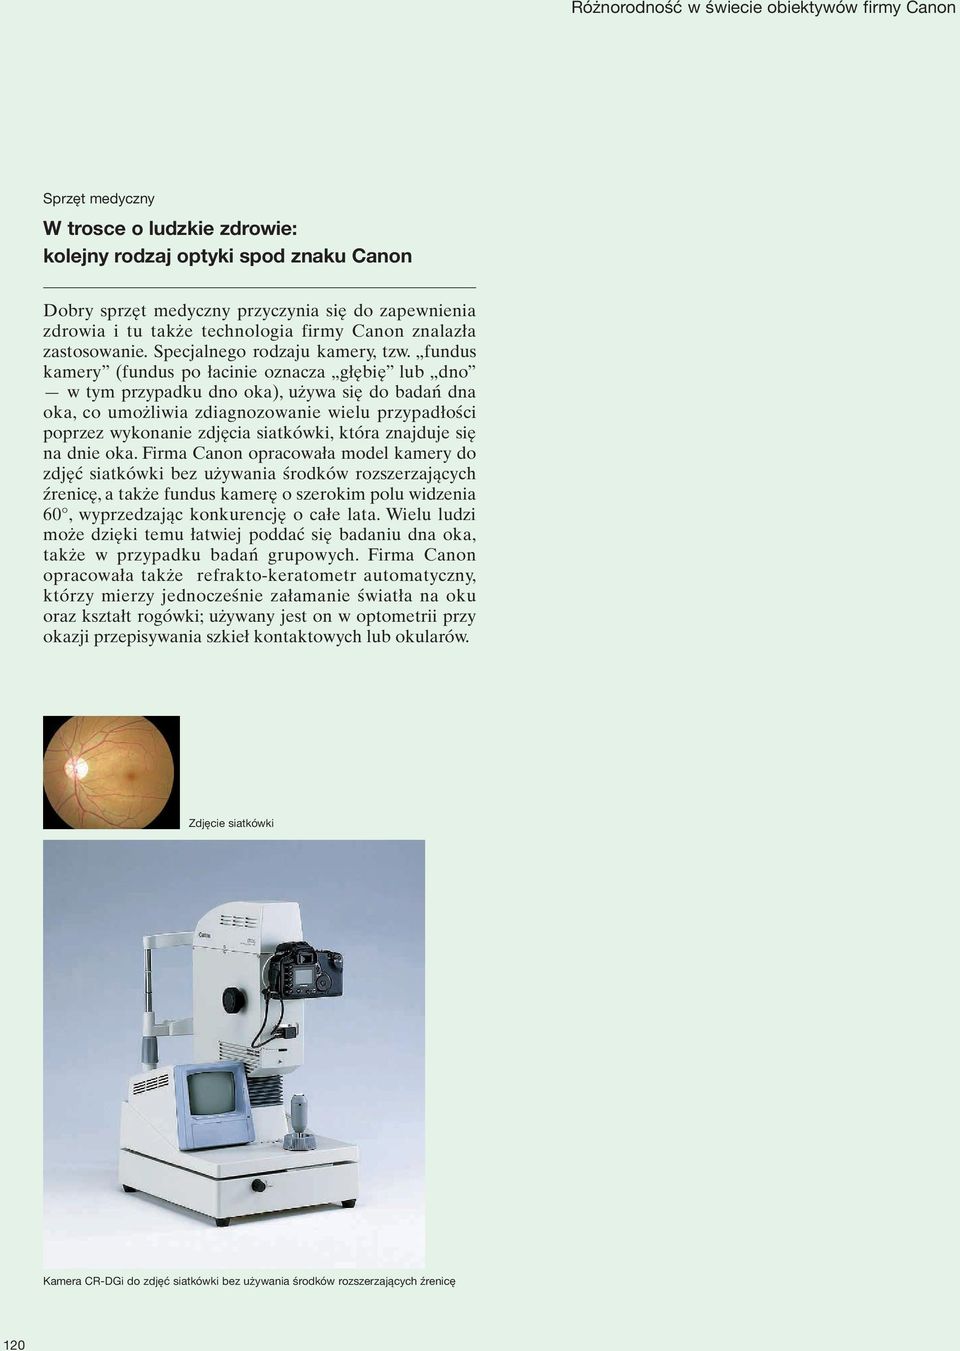 fundus kamery (fundus po łacinie oznacza głębię lub dno w tym przypadku dno oka), używa się do badań dna oka, co umożliwia zdiagnozowanie wielu przypadłości poprzez wykonanie zdjęcia siatkówki, która